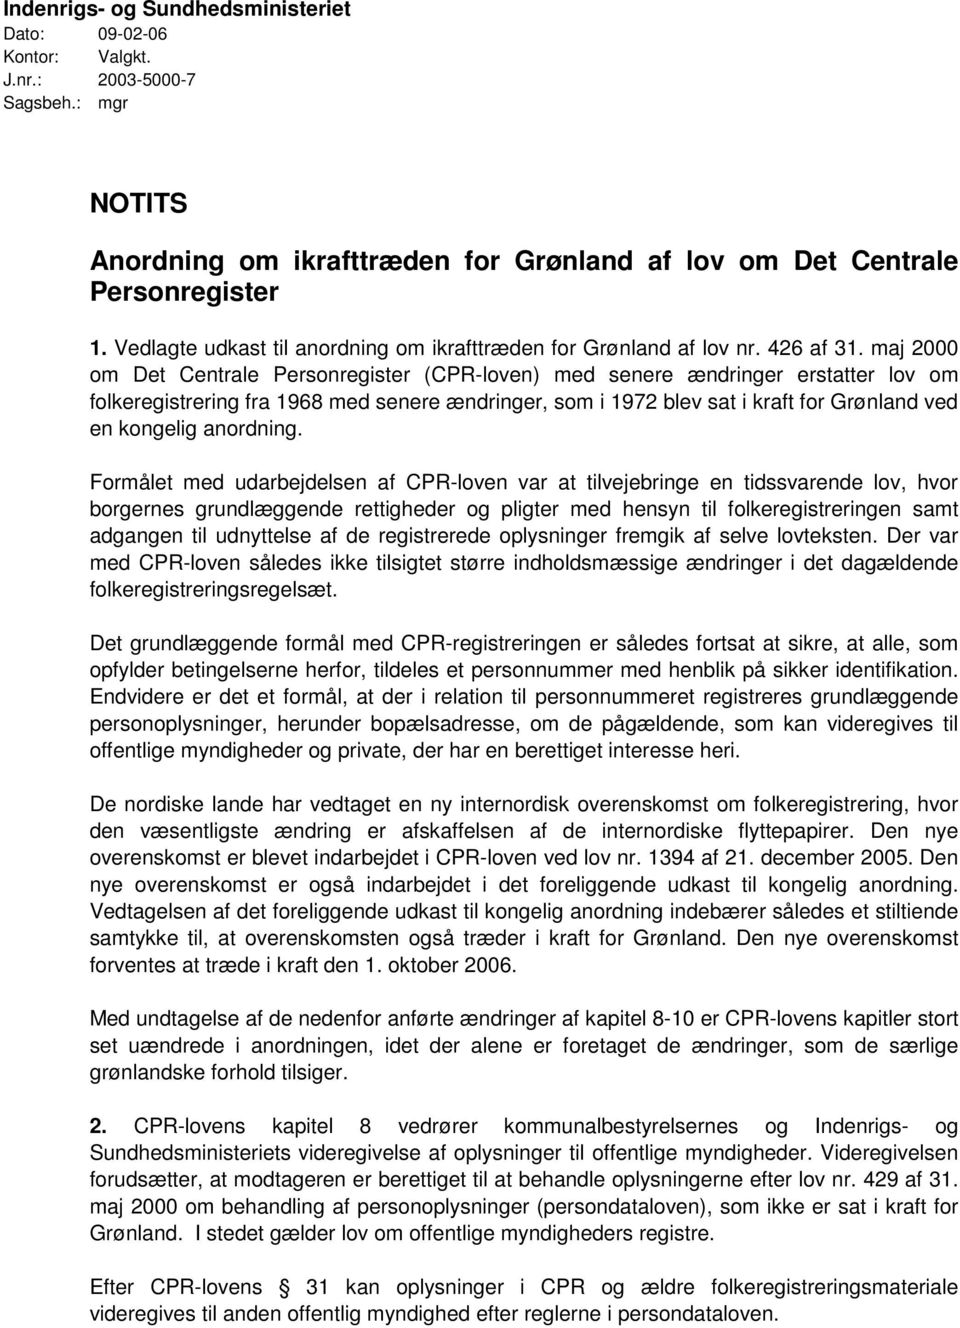 maj 2000 om Det Centrale Personregister (CPR-loven) med senere ændringer erstatter lov om folkeregistrering fra 1968 med senere ændringer, som i 1972 blev sat i kraft for Grønland ved en kongelig